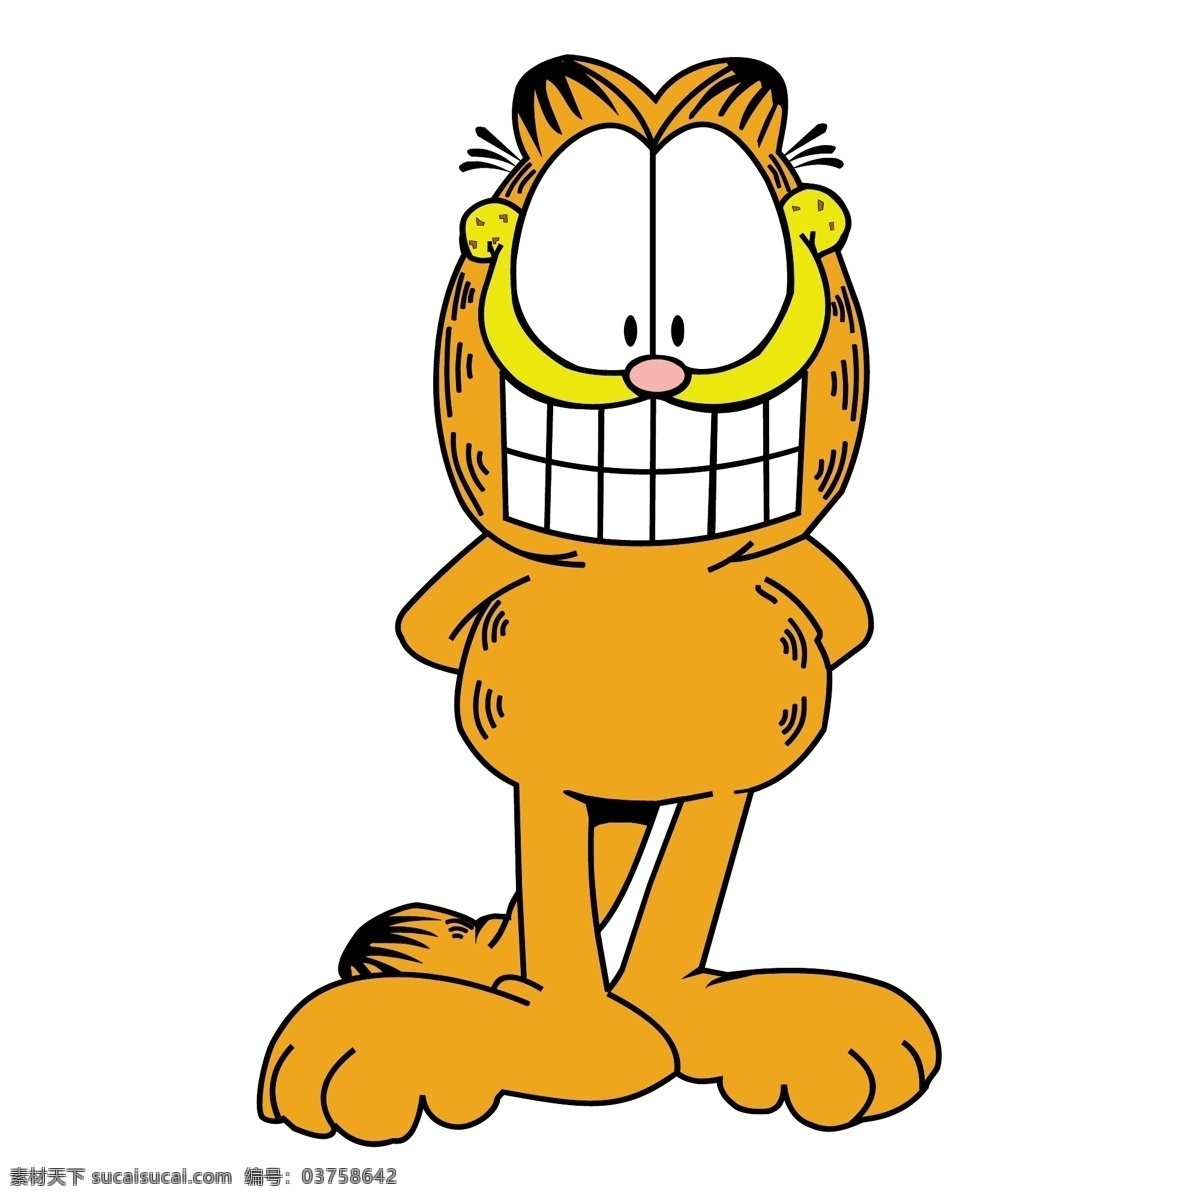 加菲猫 猫 黄色 动漫人物 搞笑 牙齿 大眼睛 搞笑猫 动漫动画